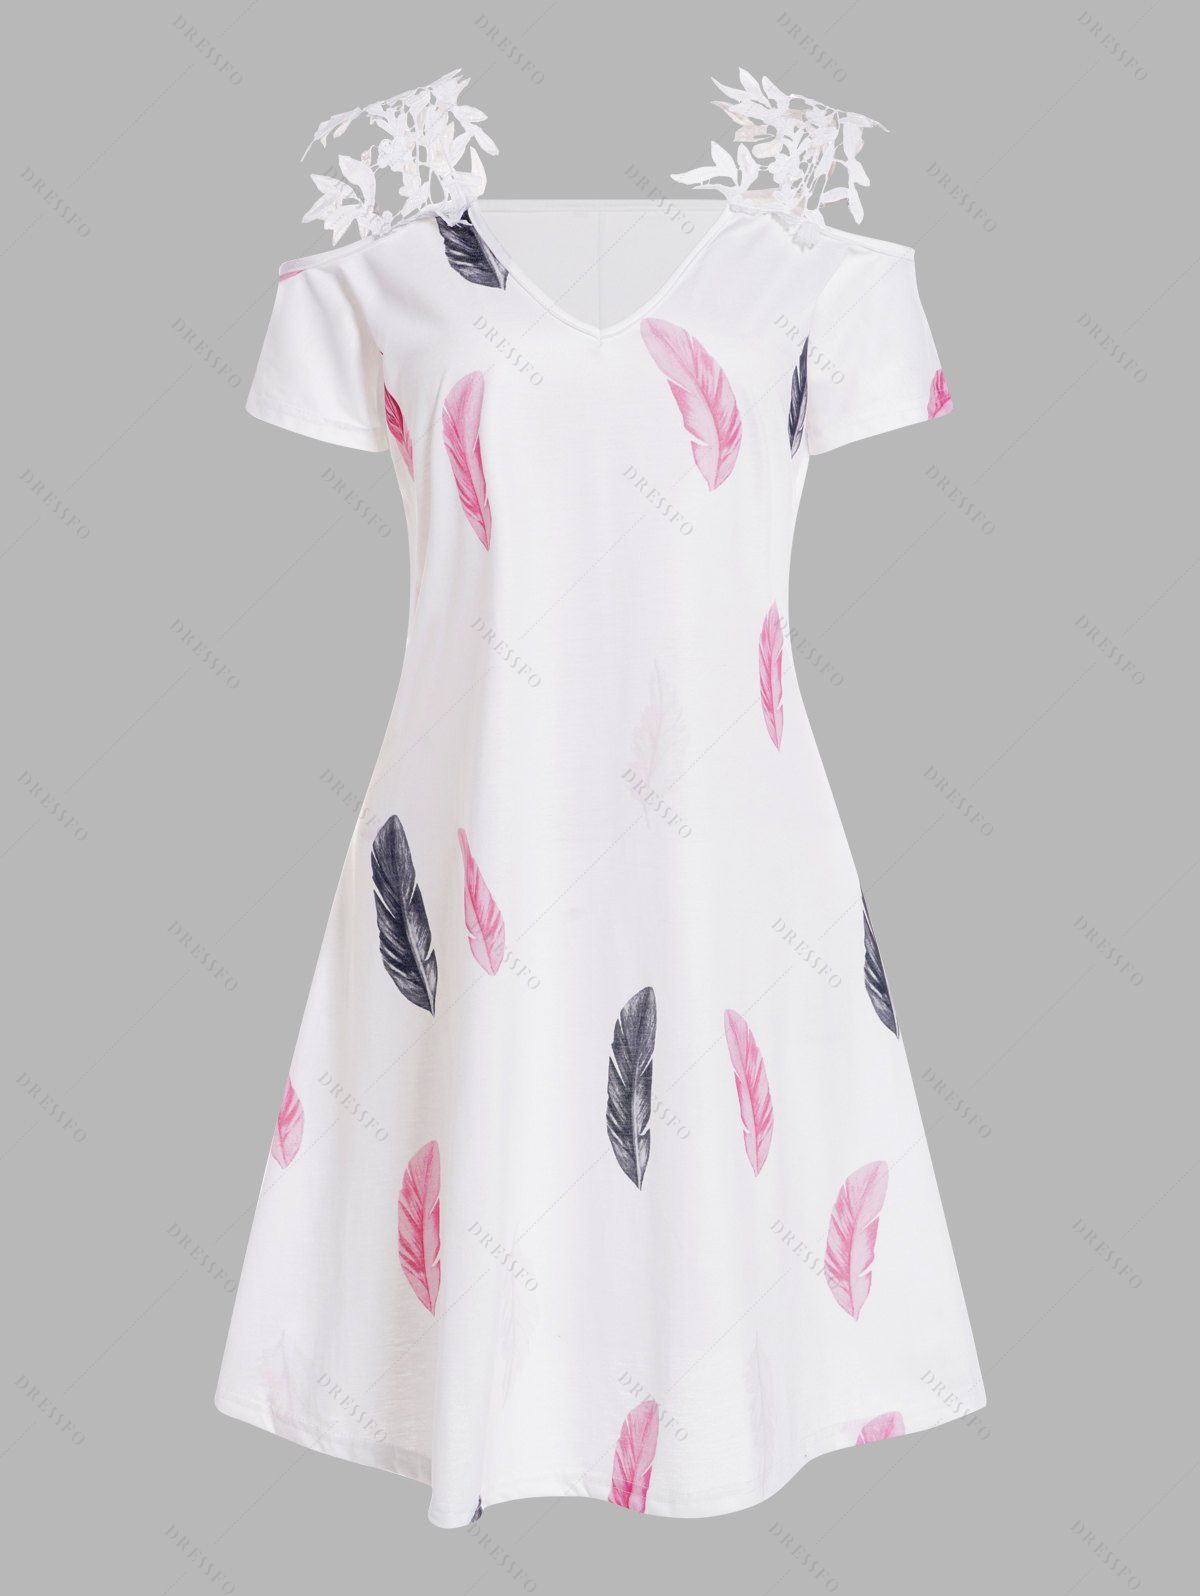 Colored Feather Print Dress Guipure Lace V Neck Cold Shoulder A Line Mini Dress - multicolor A 2XL